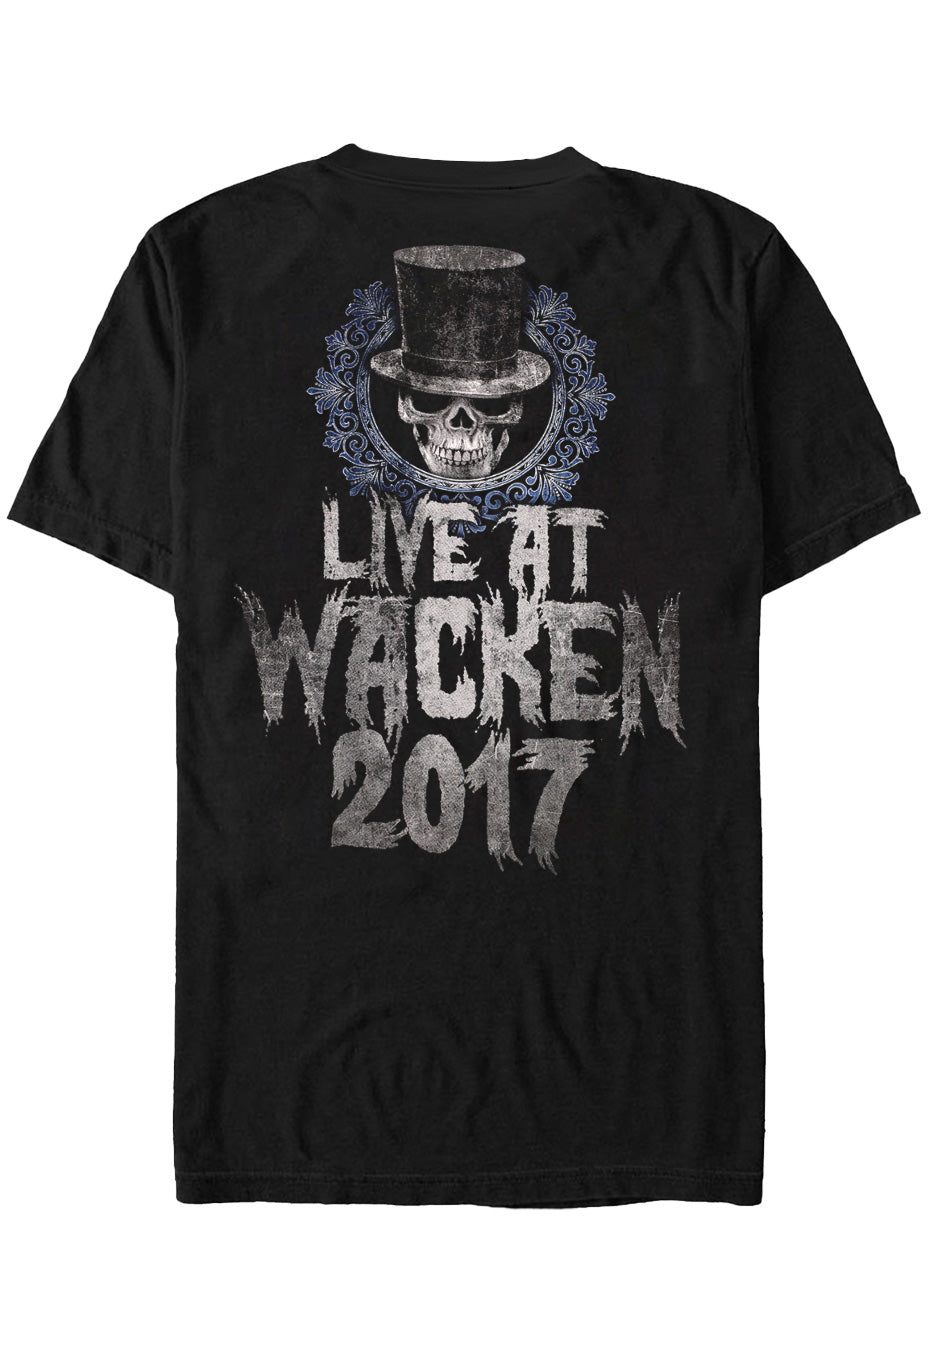 Avantasia - Wacken 2017 - T-Shirt